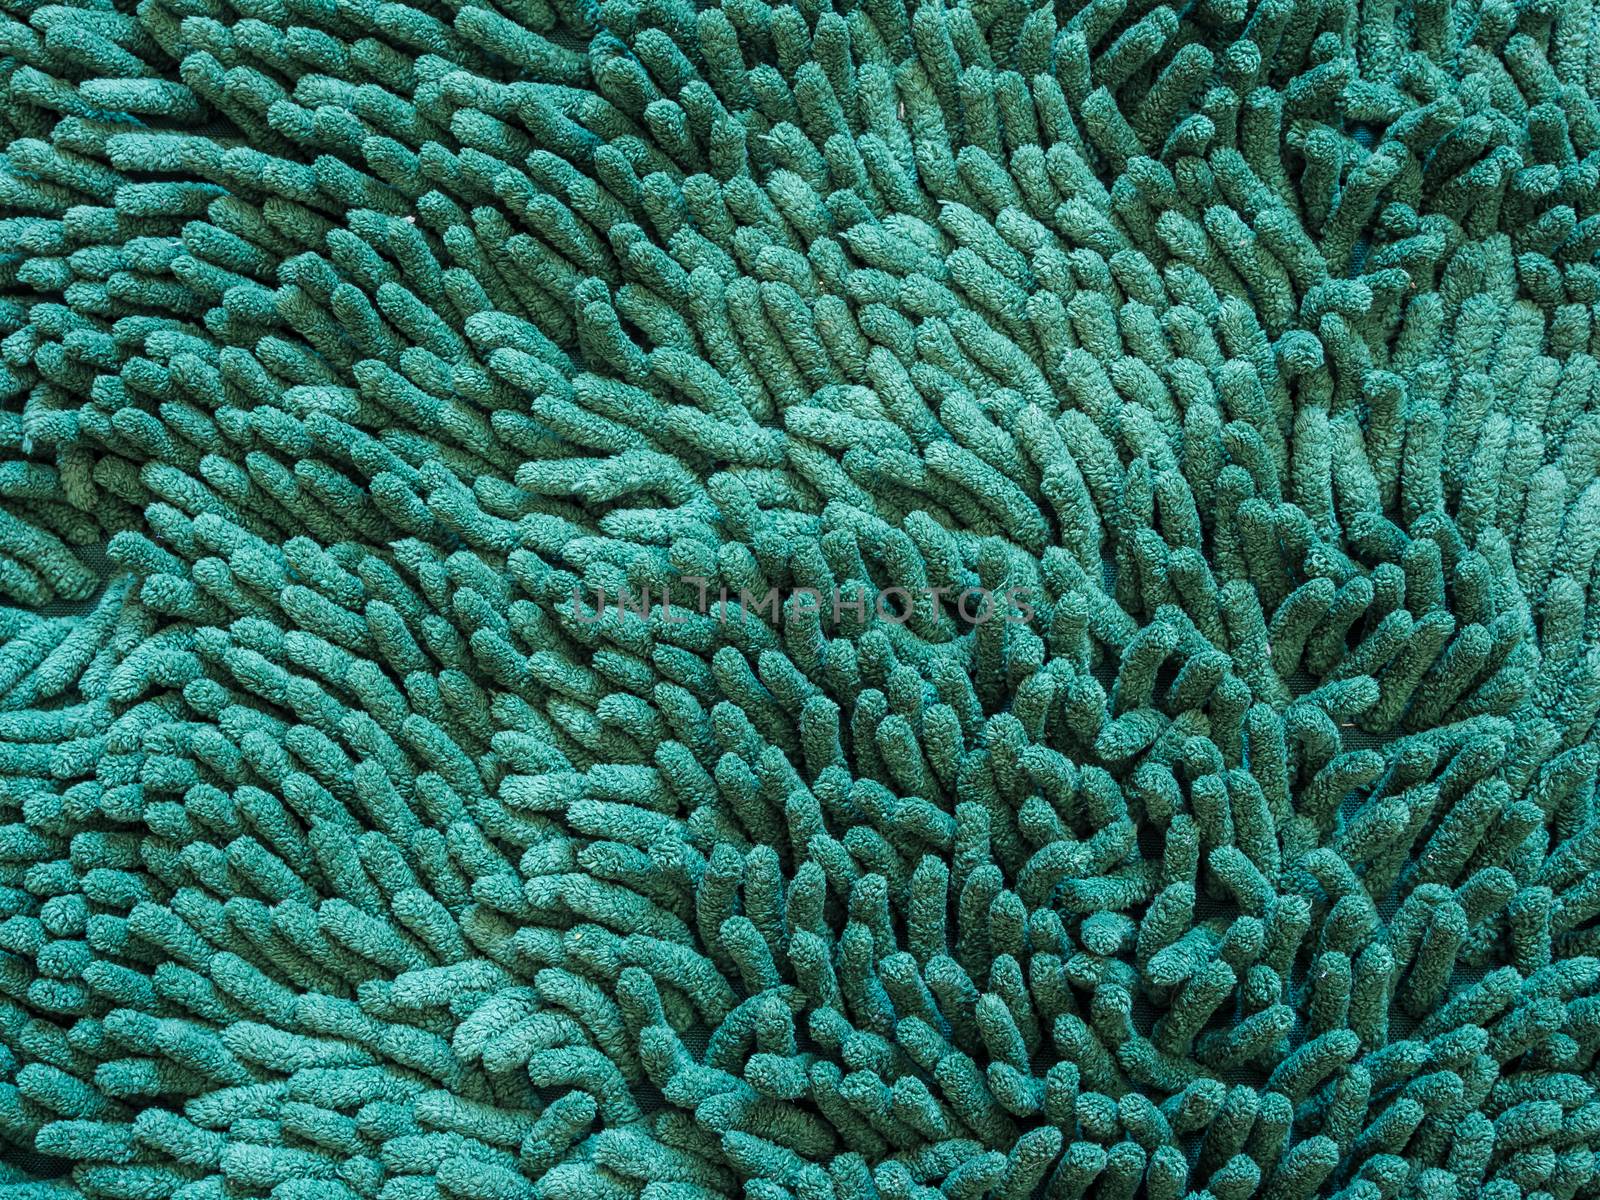 green carpet fiber hair texture background